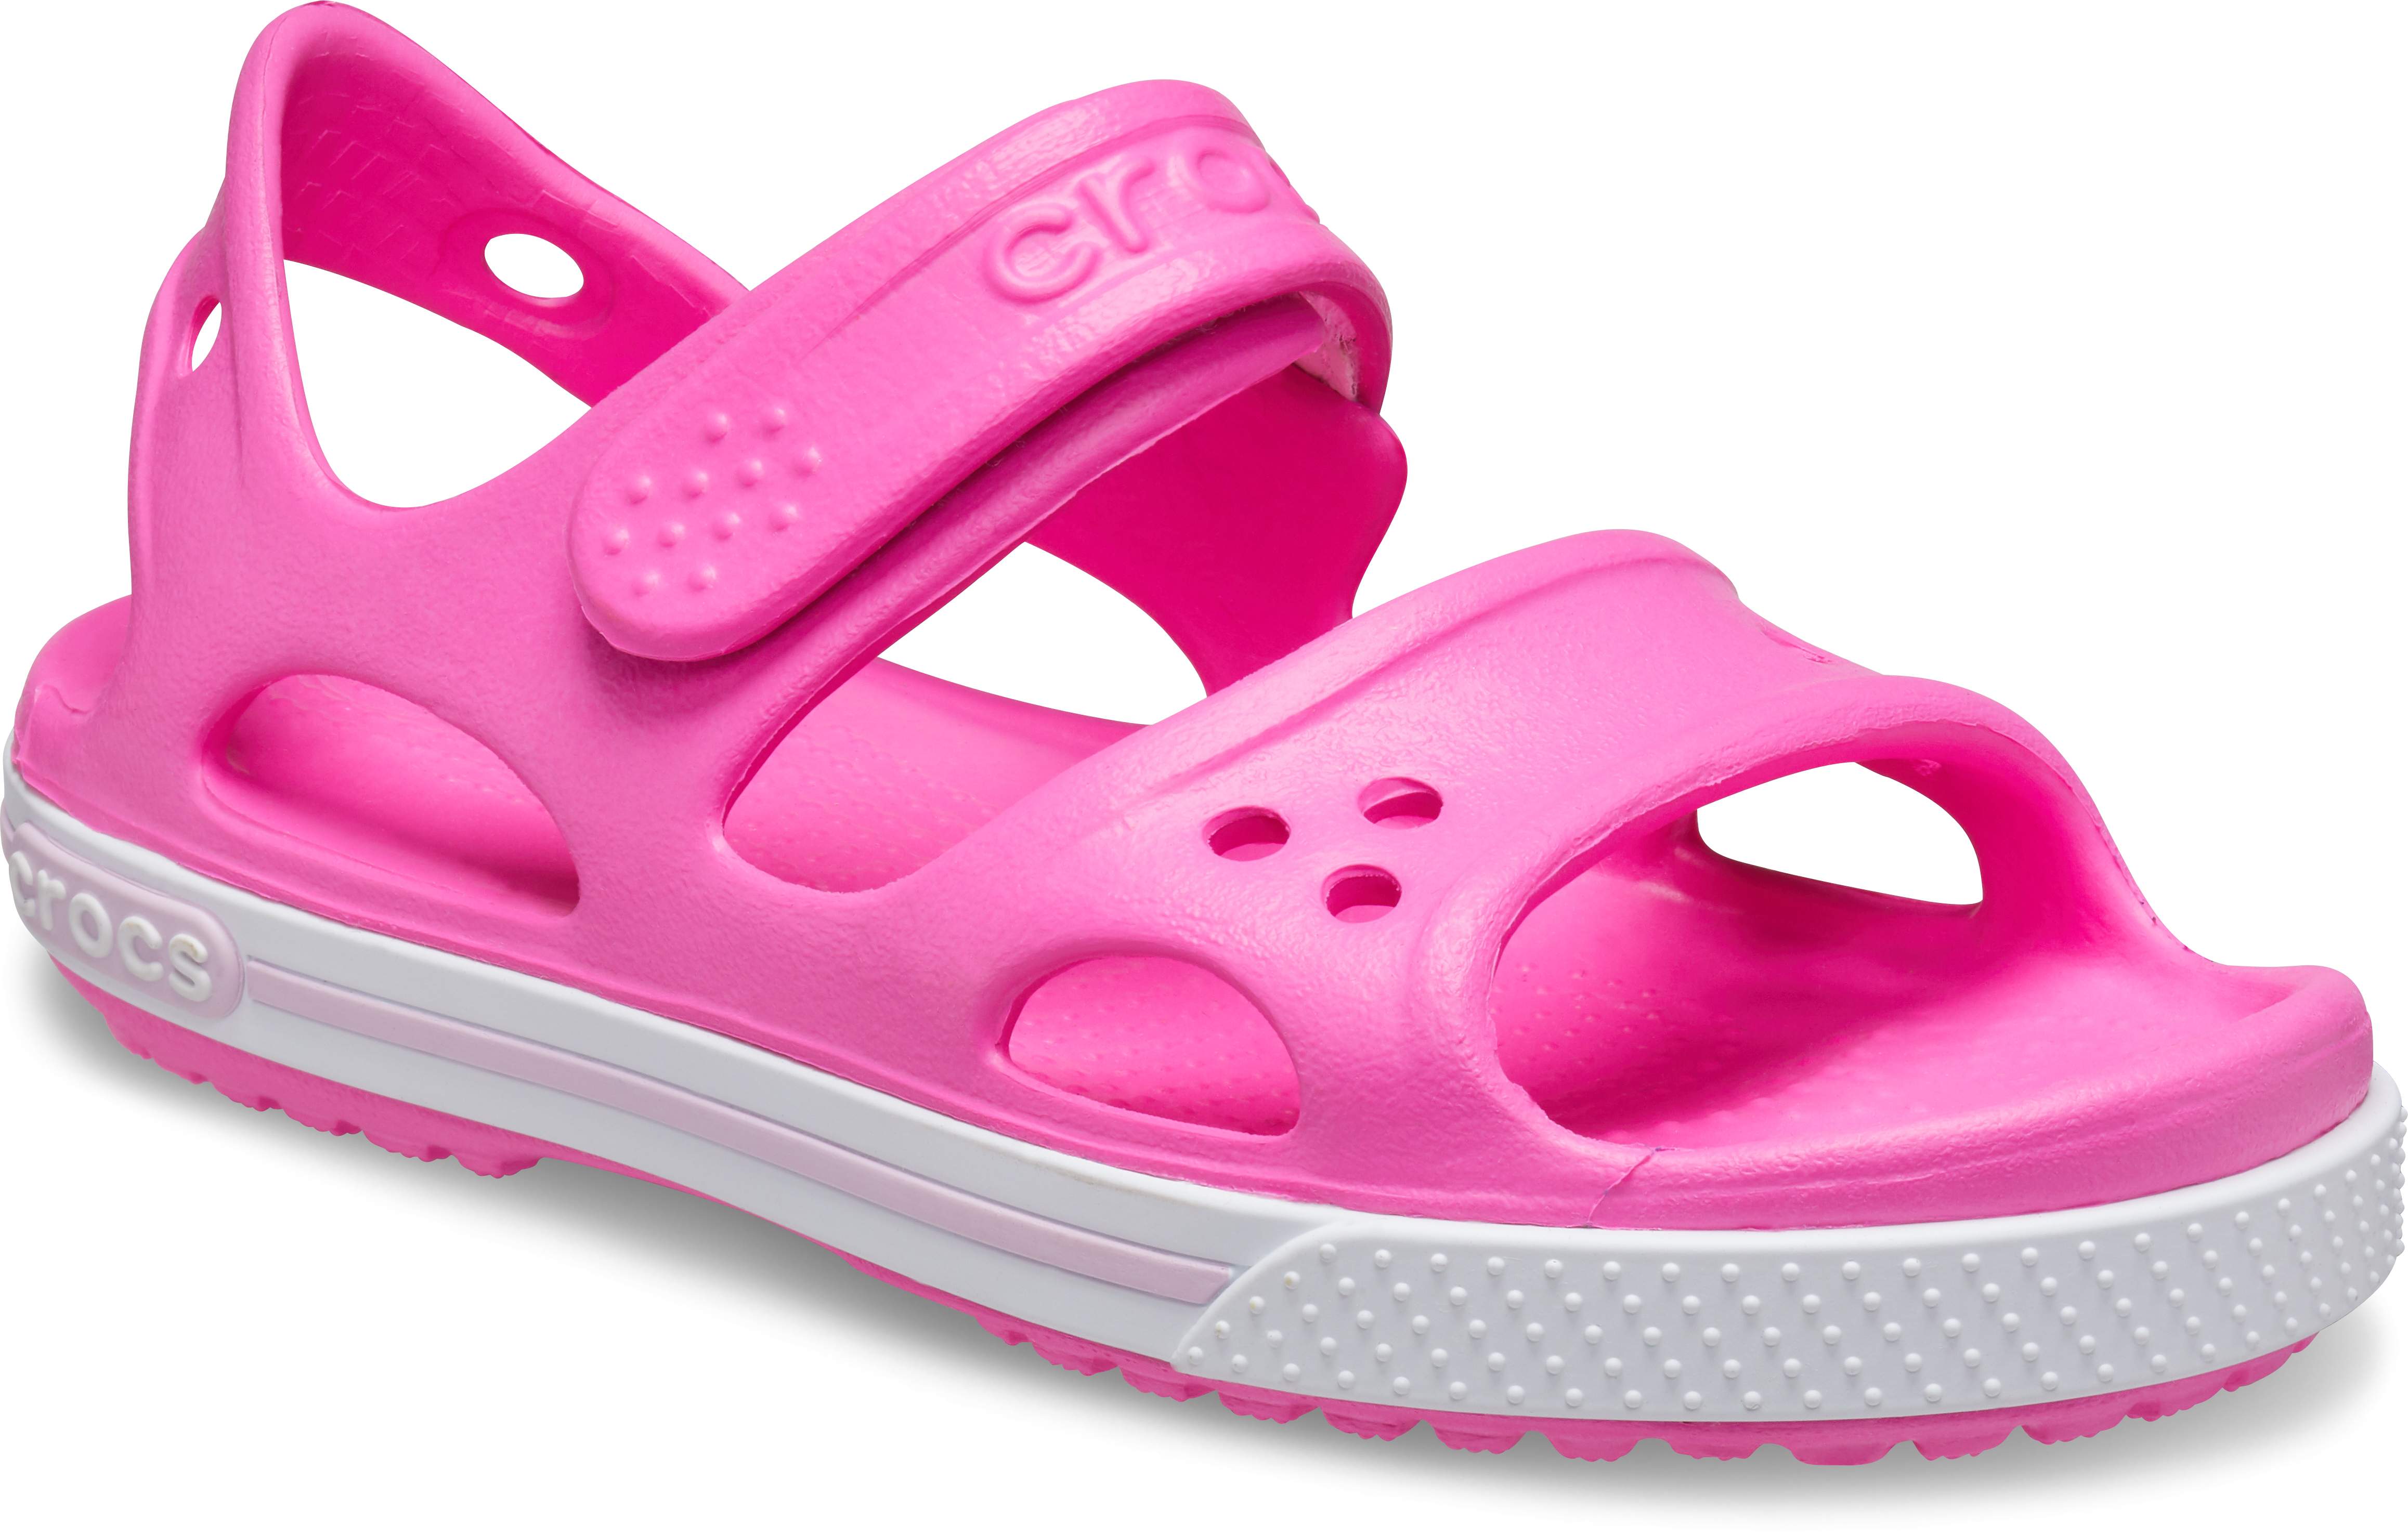 Preschool Crocband™ II Sandal - Crocs